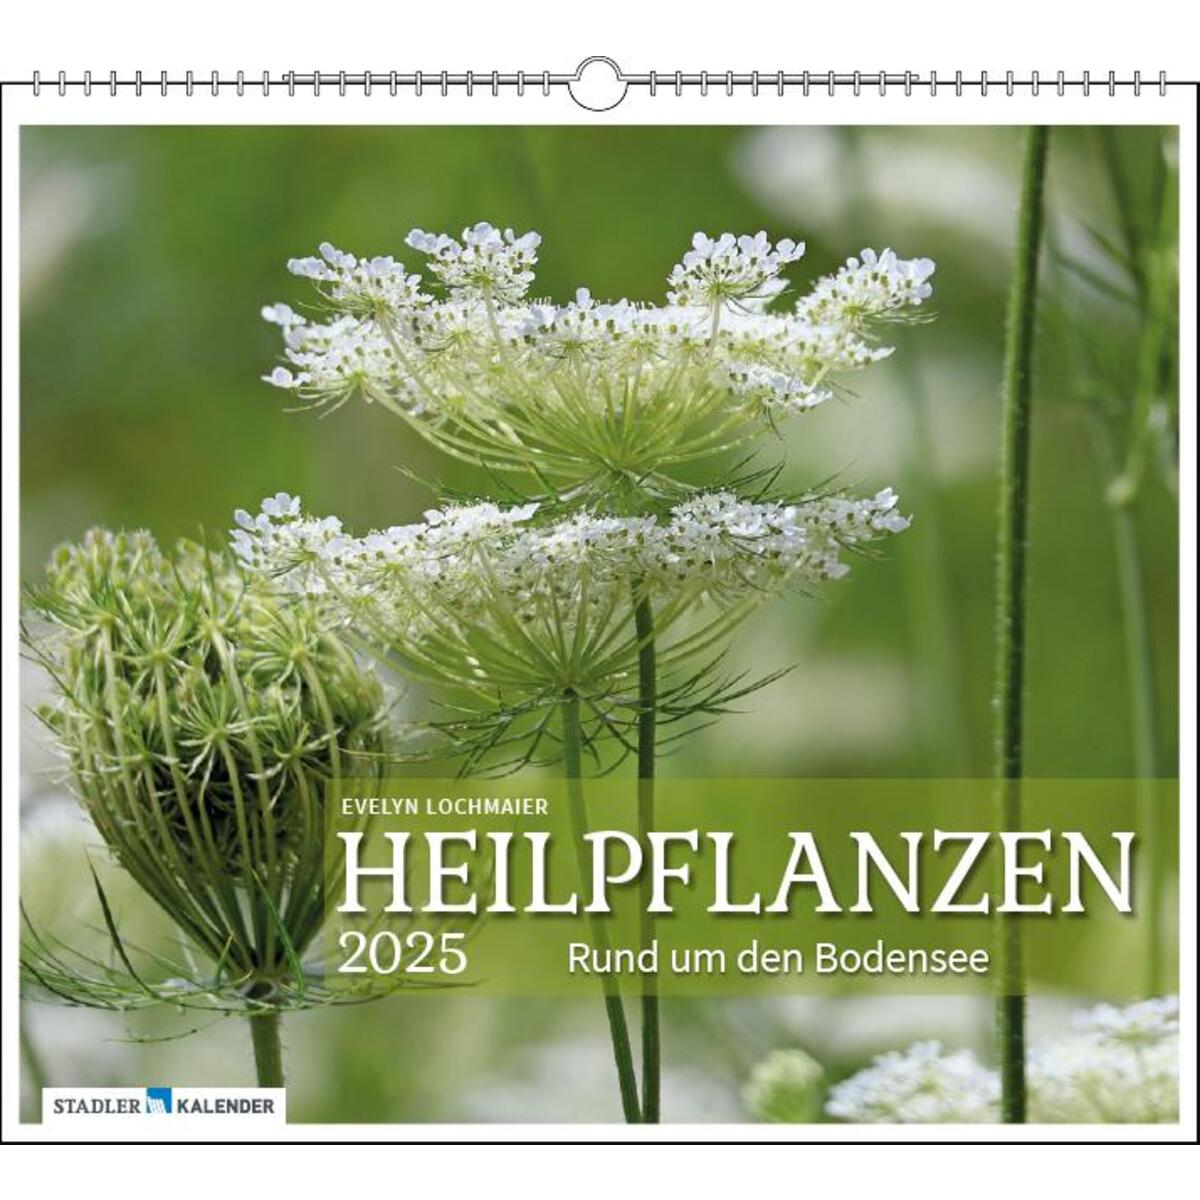 Heilpflanzen rund um den Bodensee 2025 von Stadler Kalender